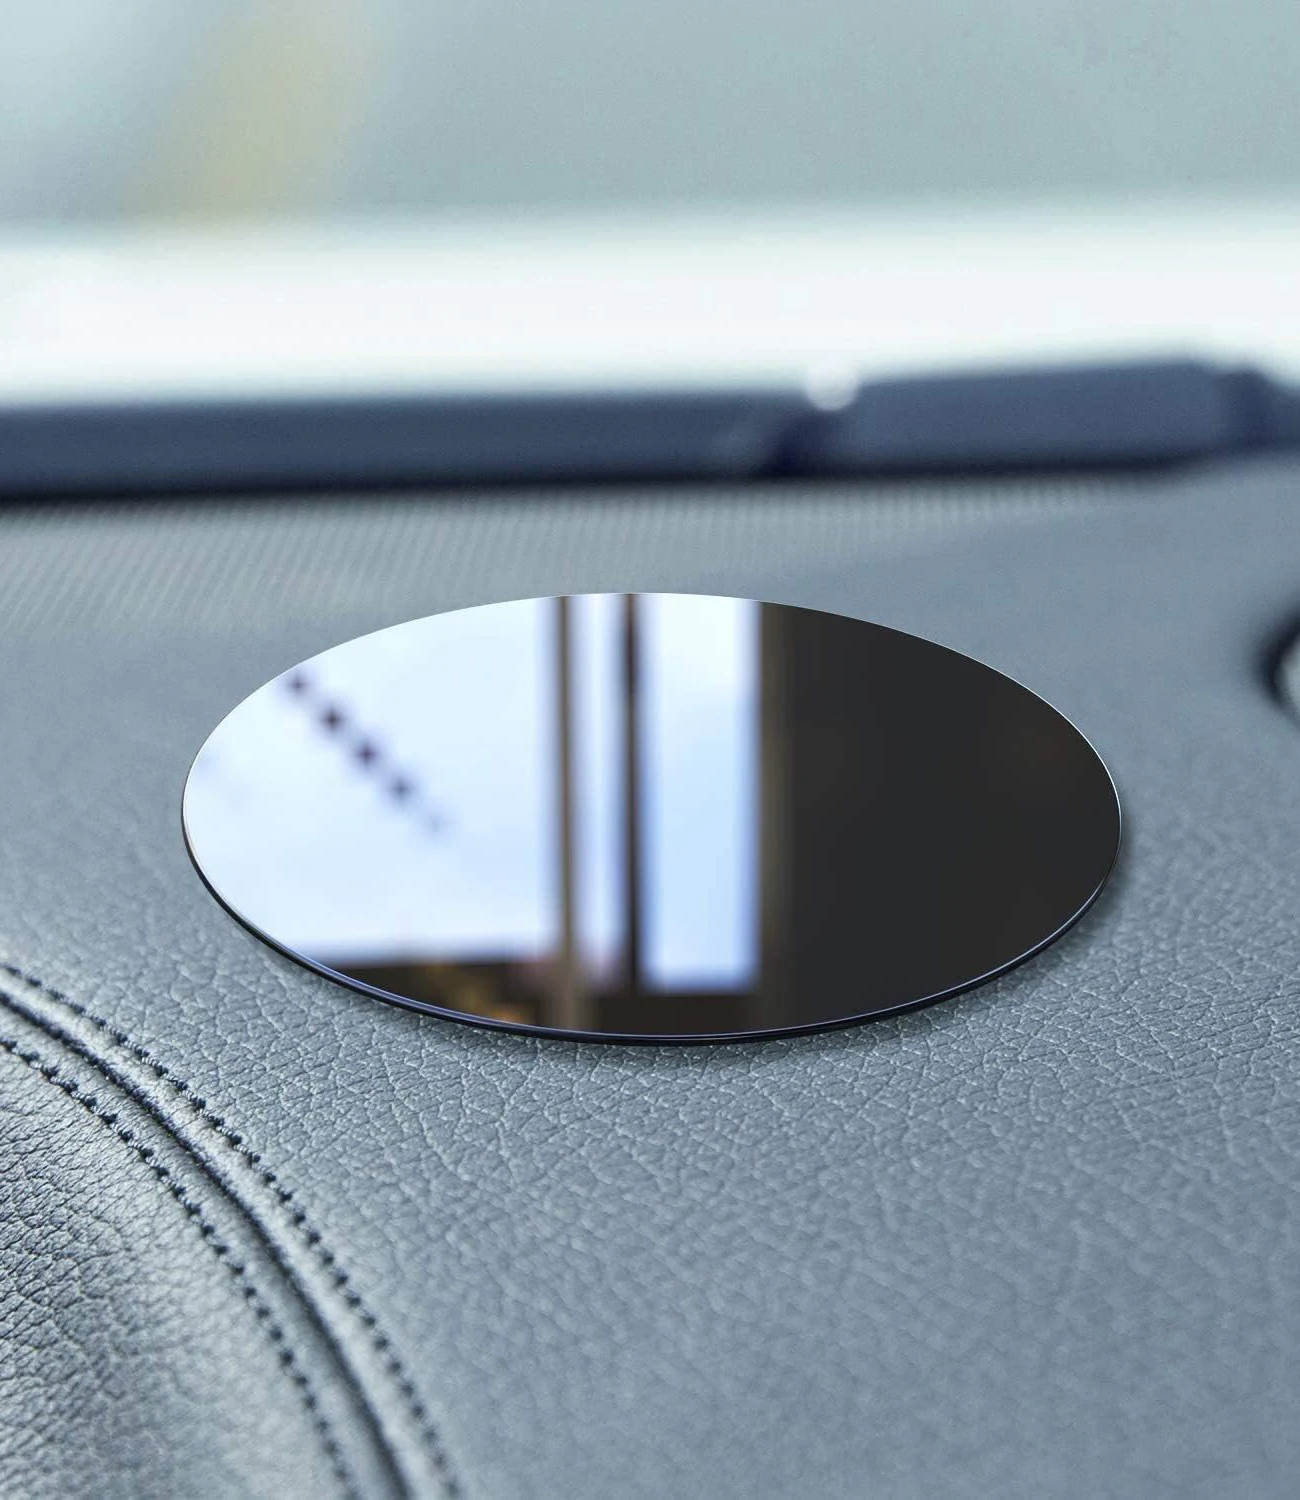 Universal Auto Saugnapf Kleber Armaturen brett Montage Pad Basis für Navigation GPS Halterungen Auto Handy Halter Ständer